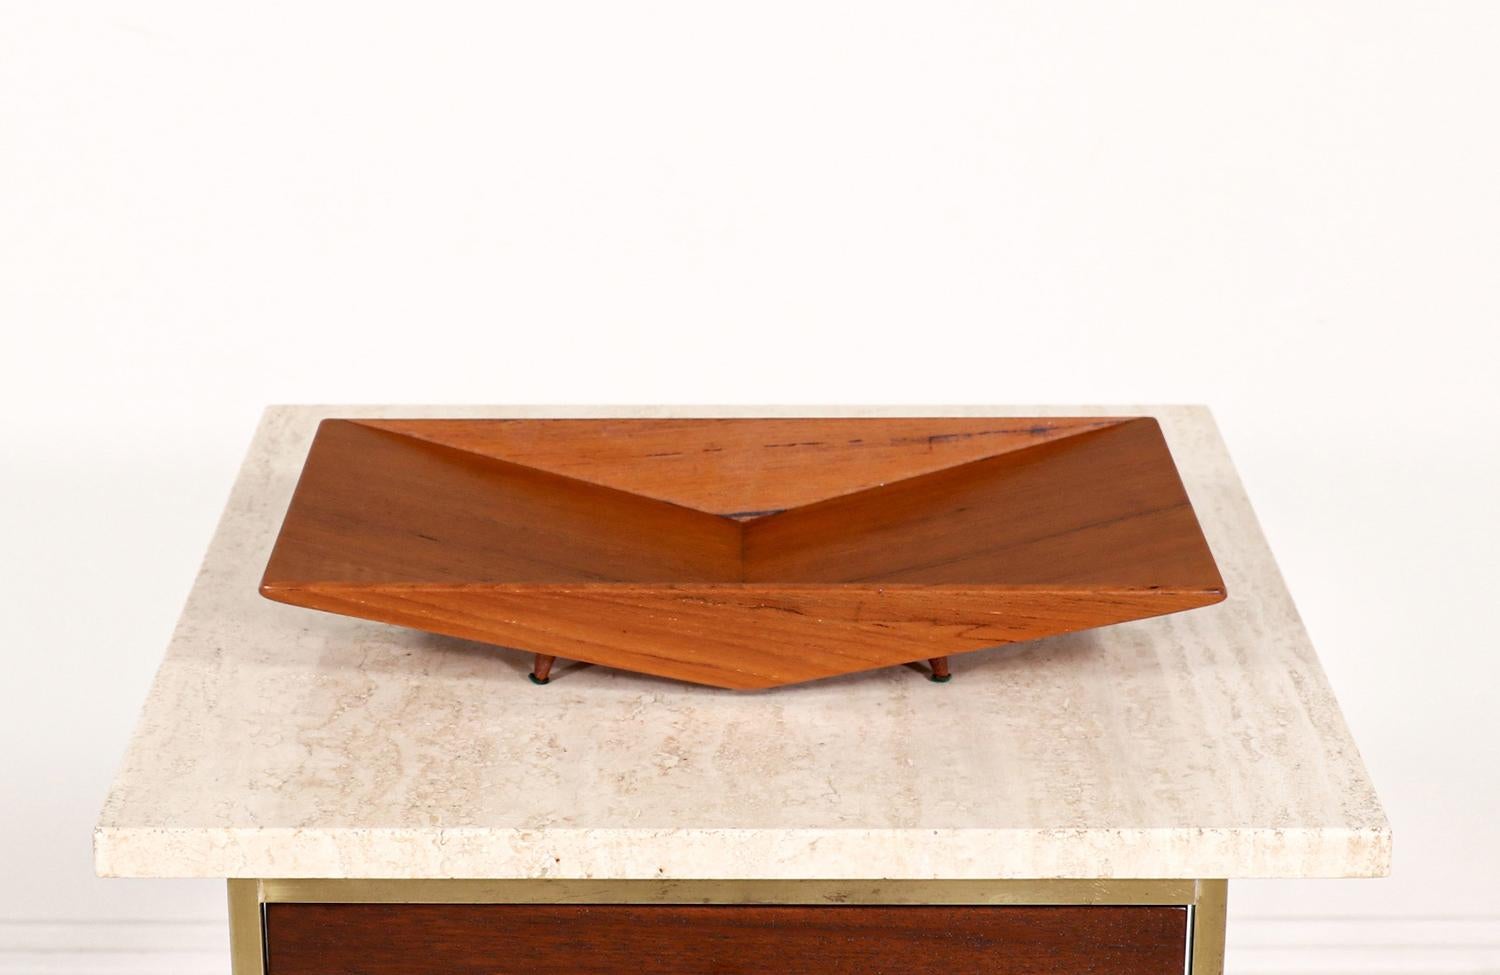 Scandinavian Modern sculpted teak tray by Sowe Konst Sovestad.